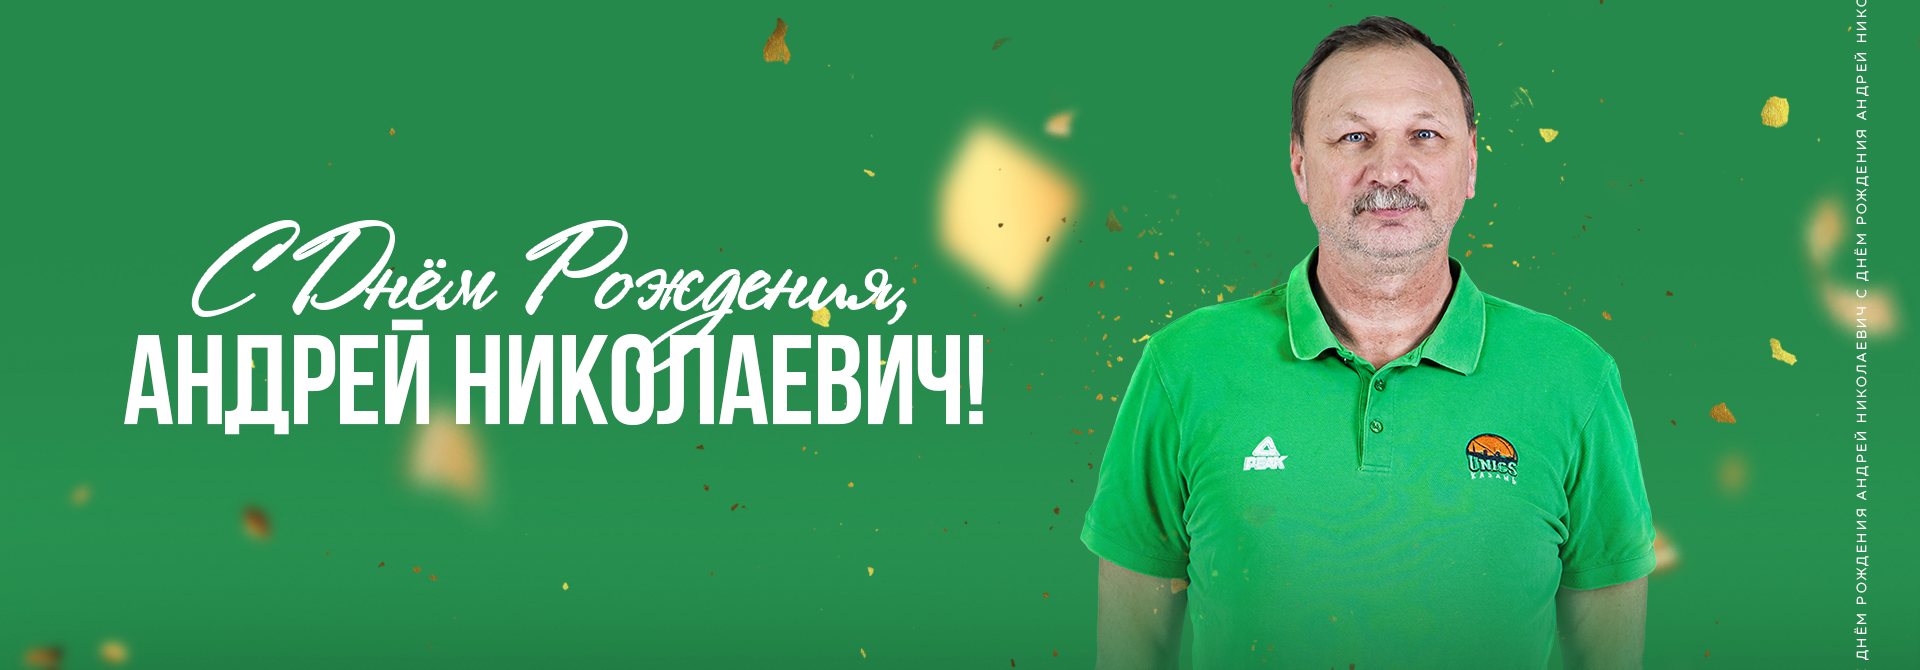 С Днём рождения, Андрей Николаевич! 